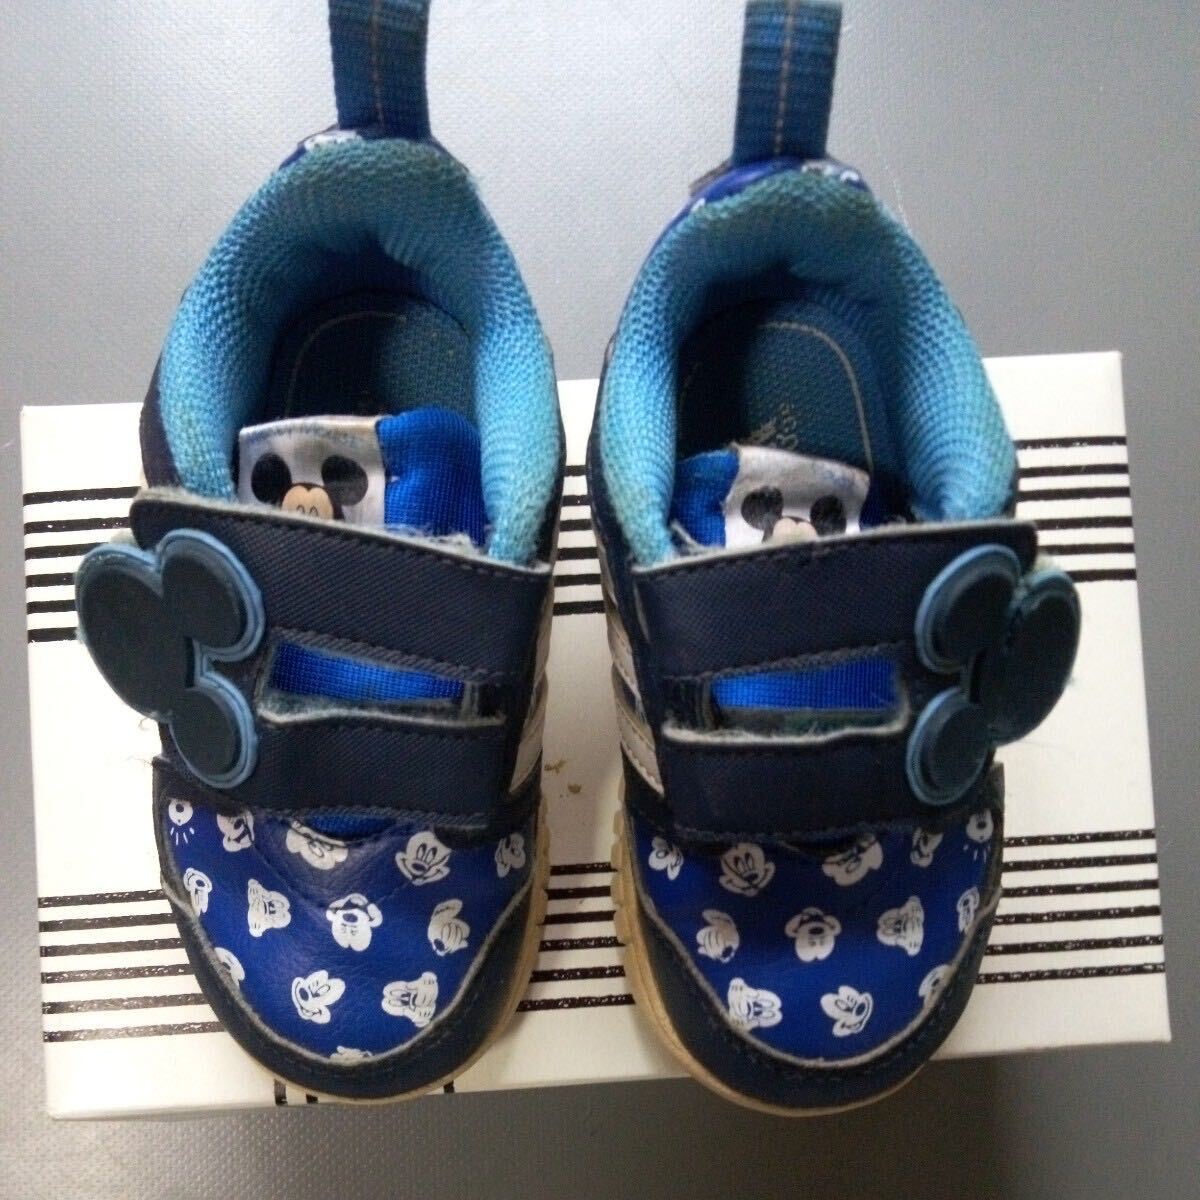  ребенок обувь спортивные туфли Disney Mickey Adidas темно-синий цвет размер примерно 15×6. прекрасный товар 